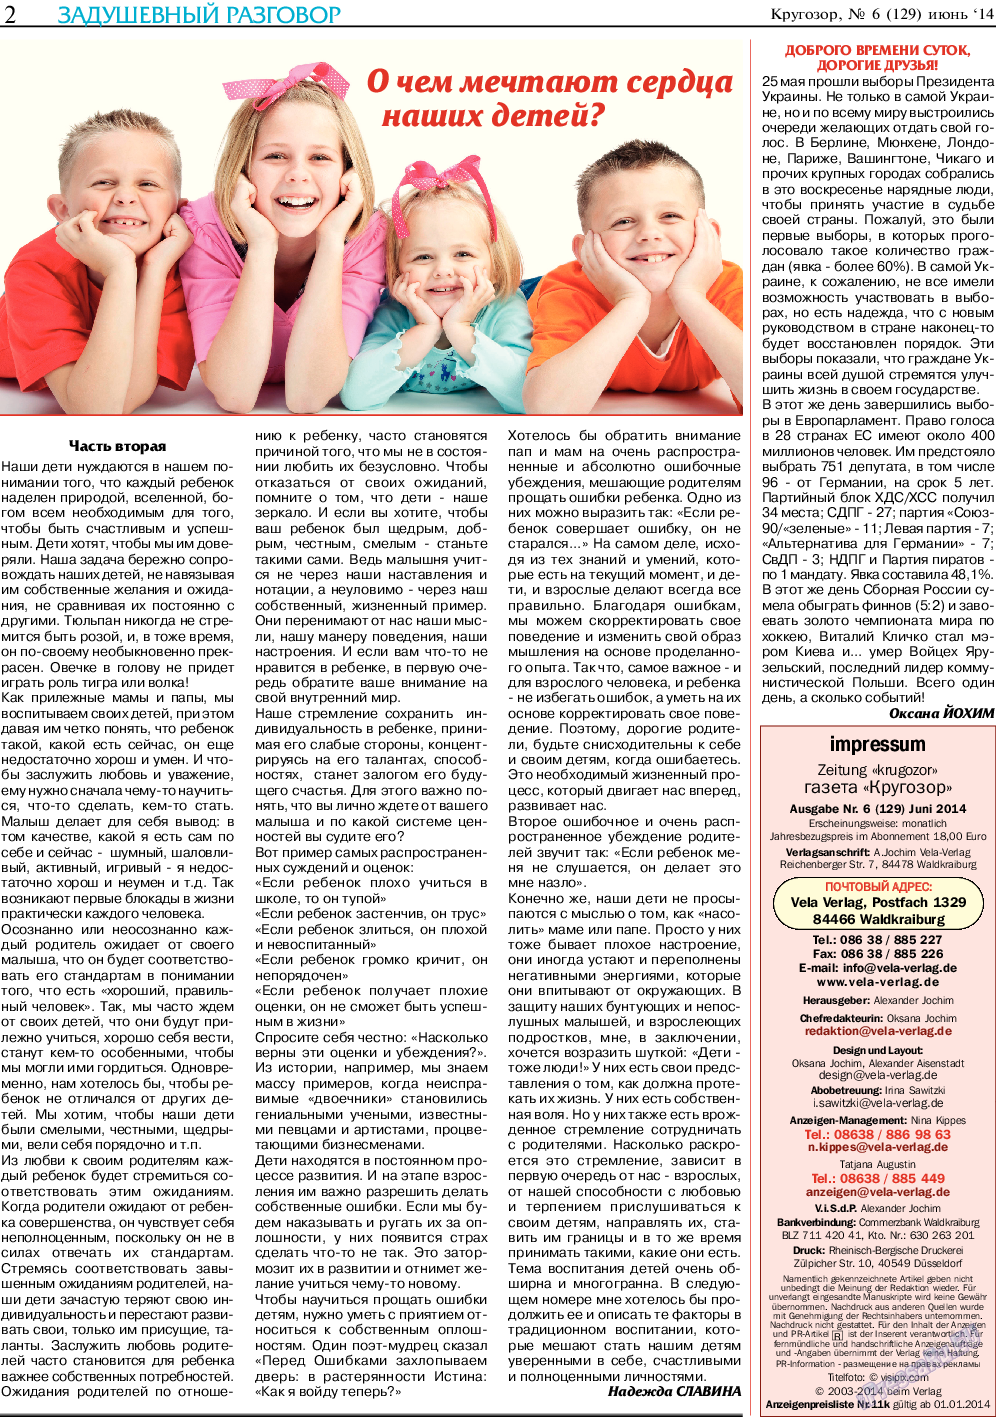 Кругозор, газета. 2014 №6 стр.2